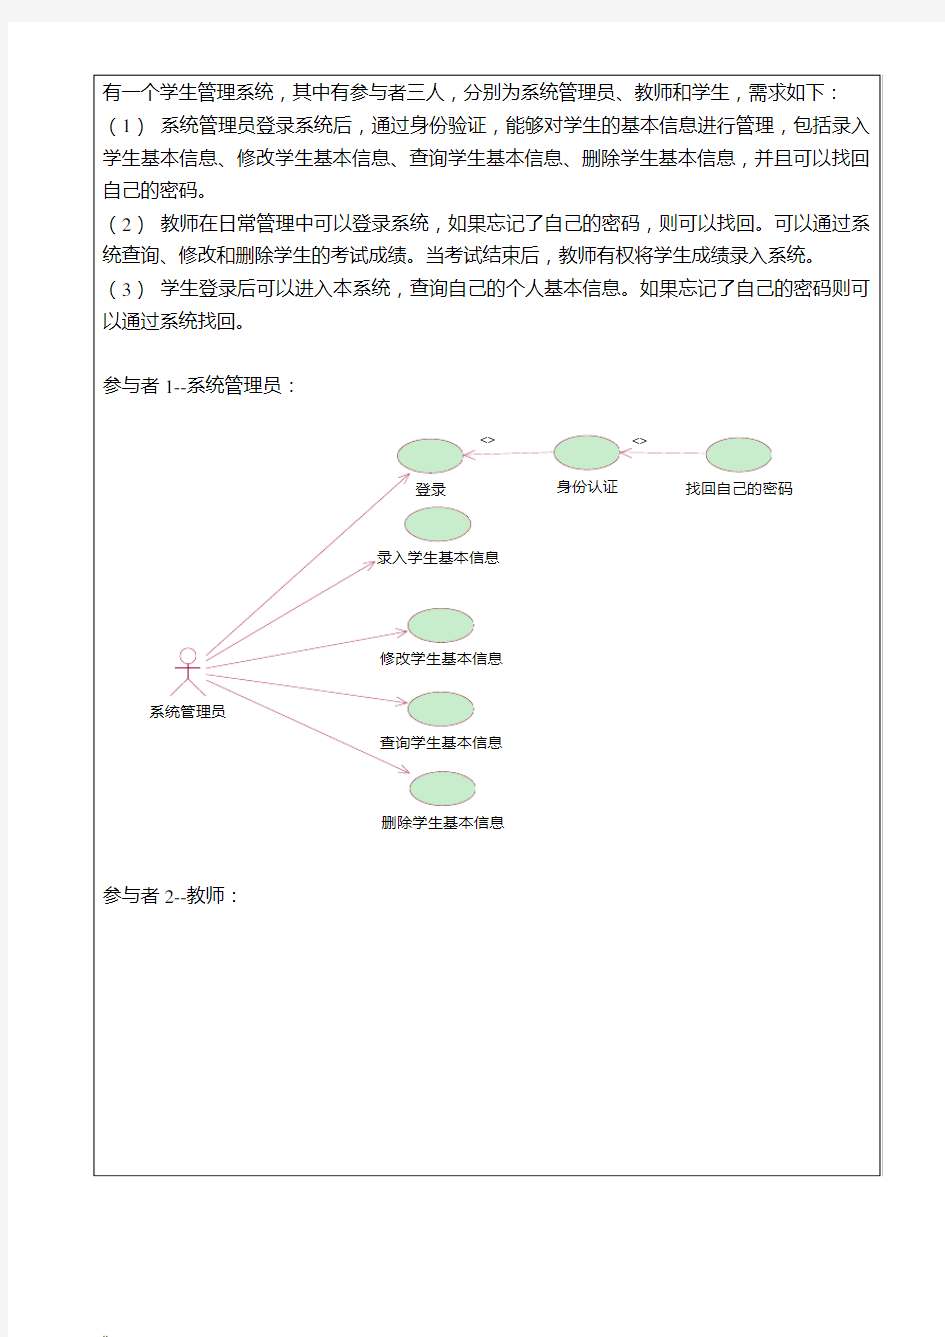 学生管理系统用例图、类图、对象图的绘制(UML)